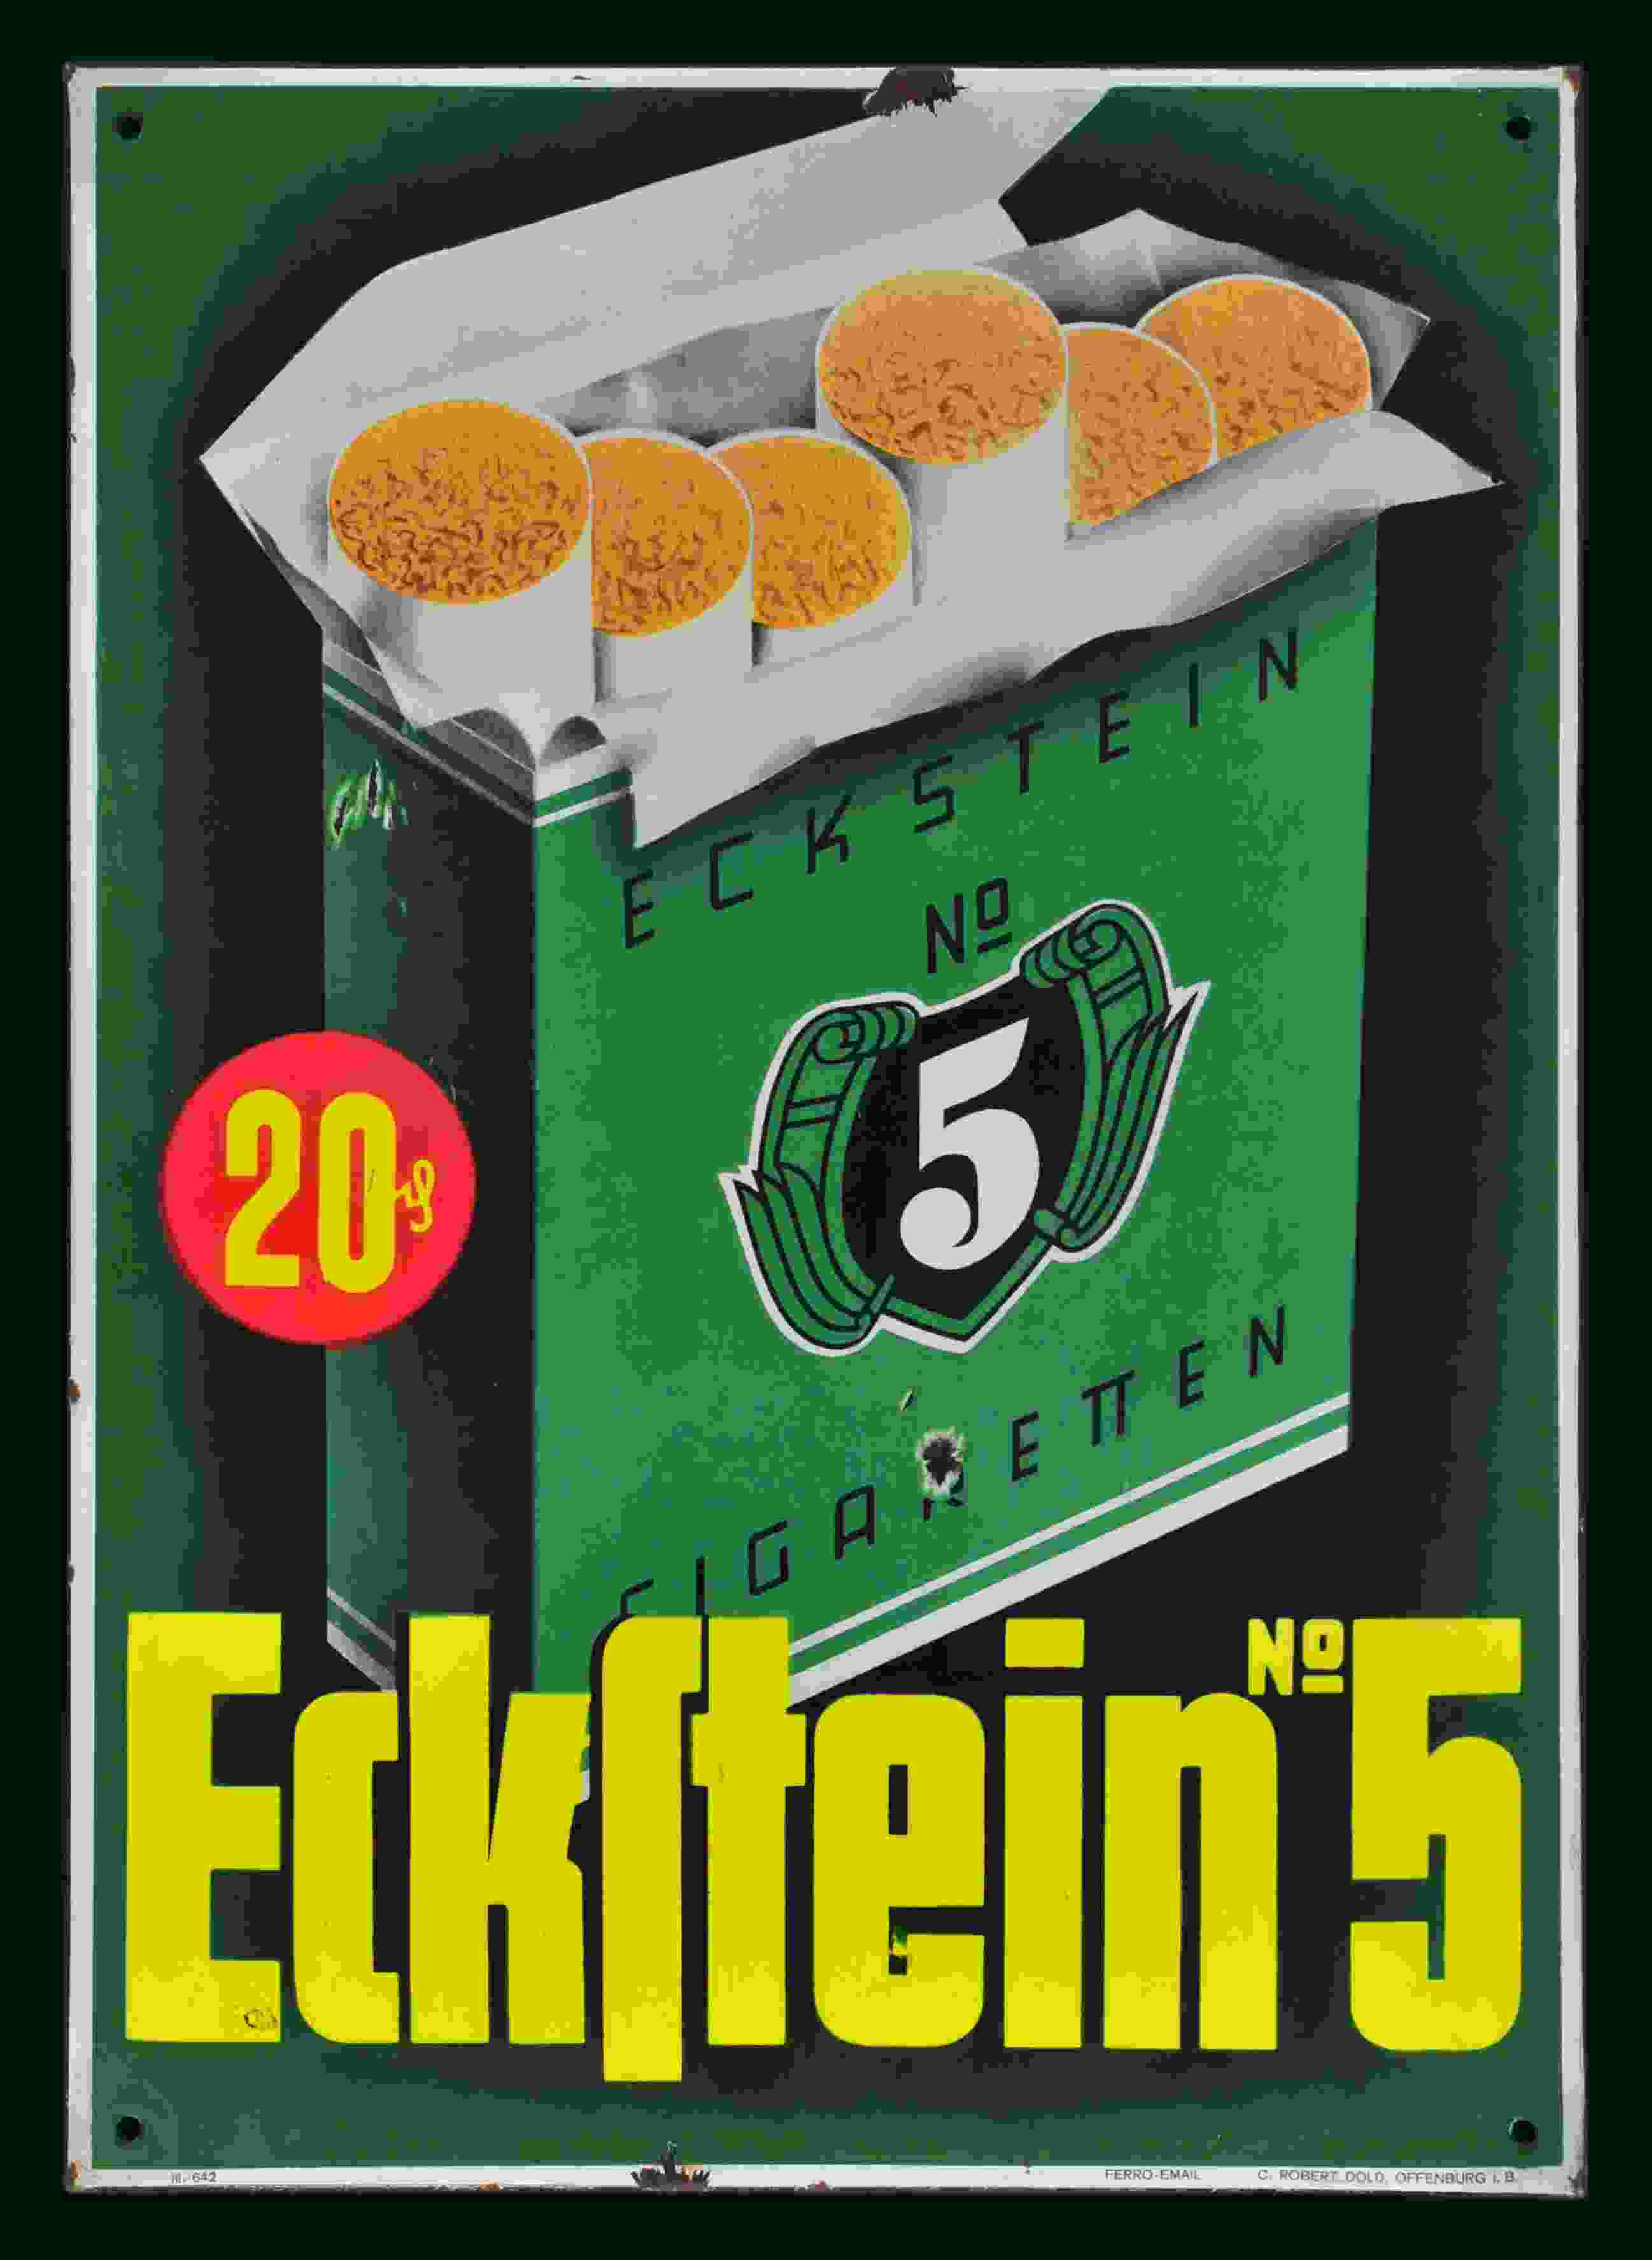 Eckstein No. 5 